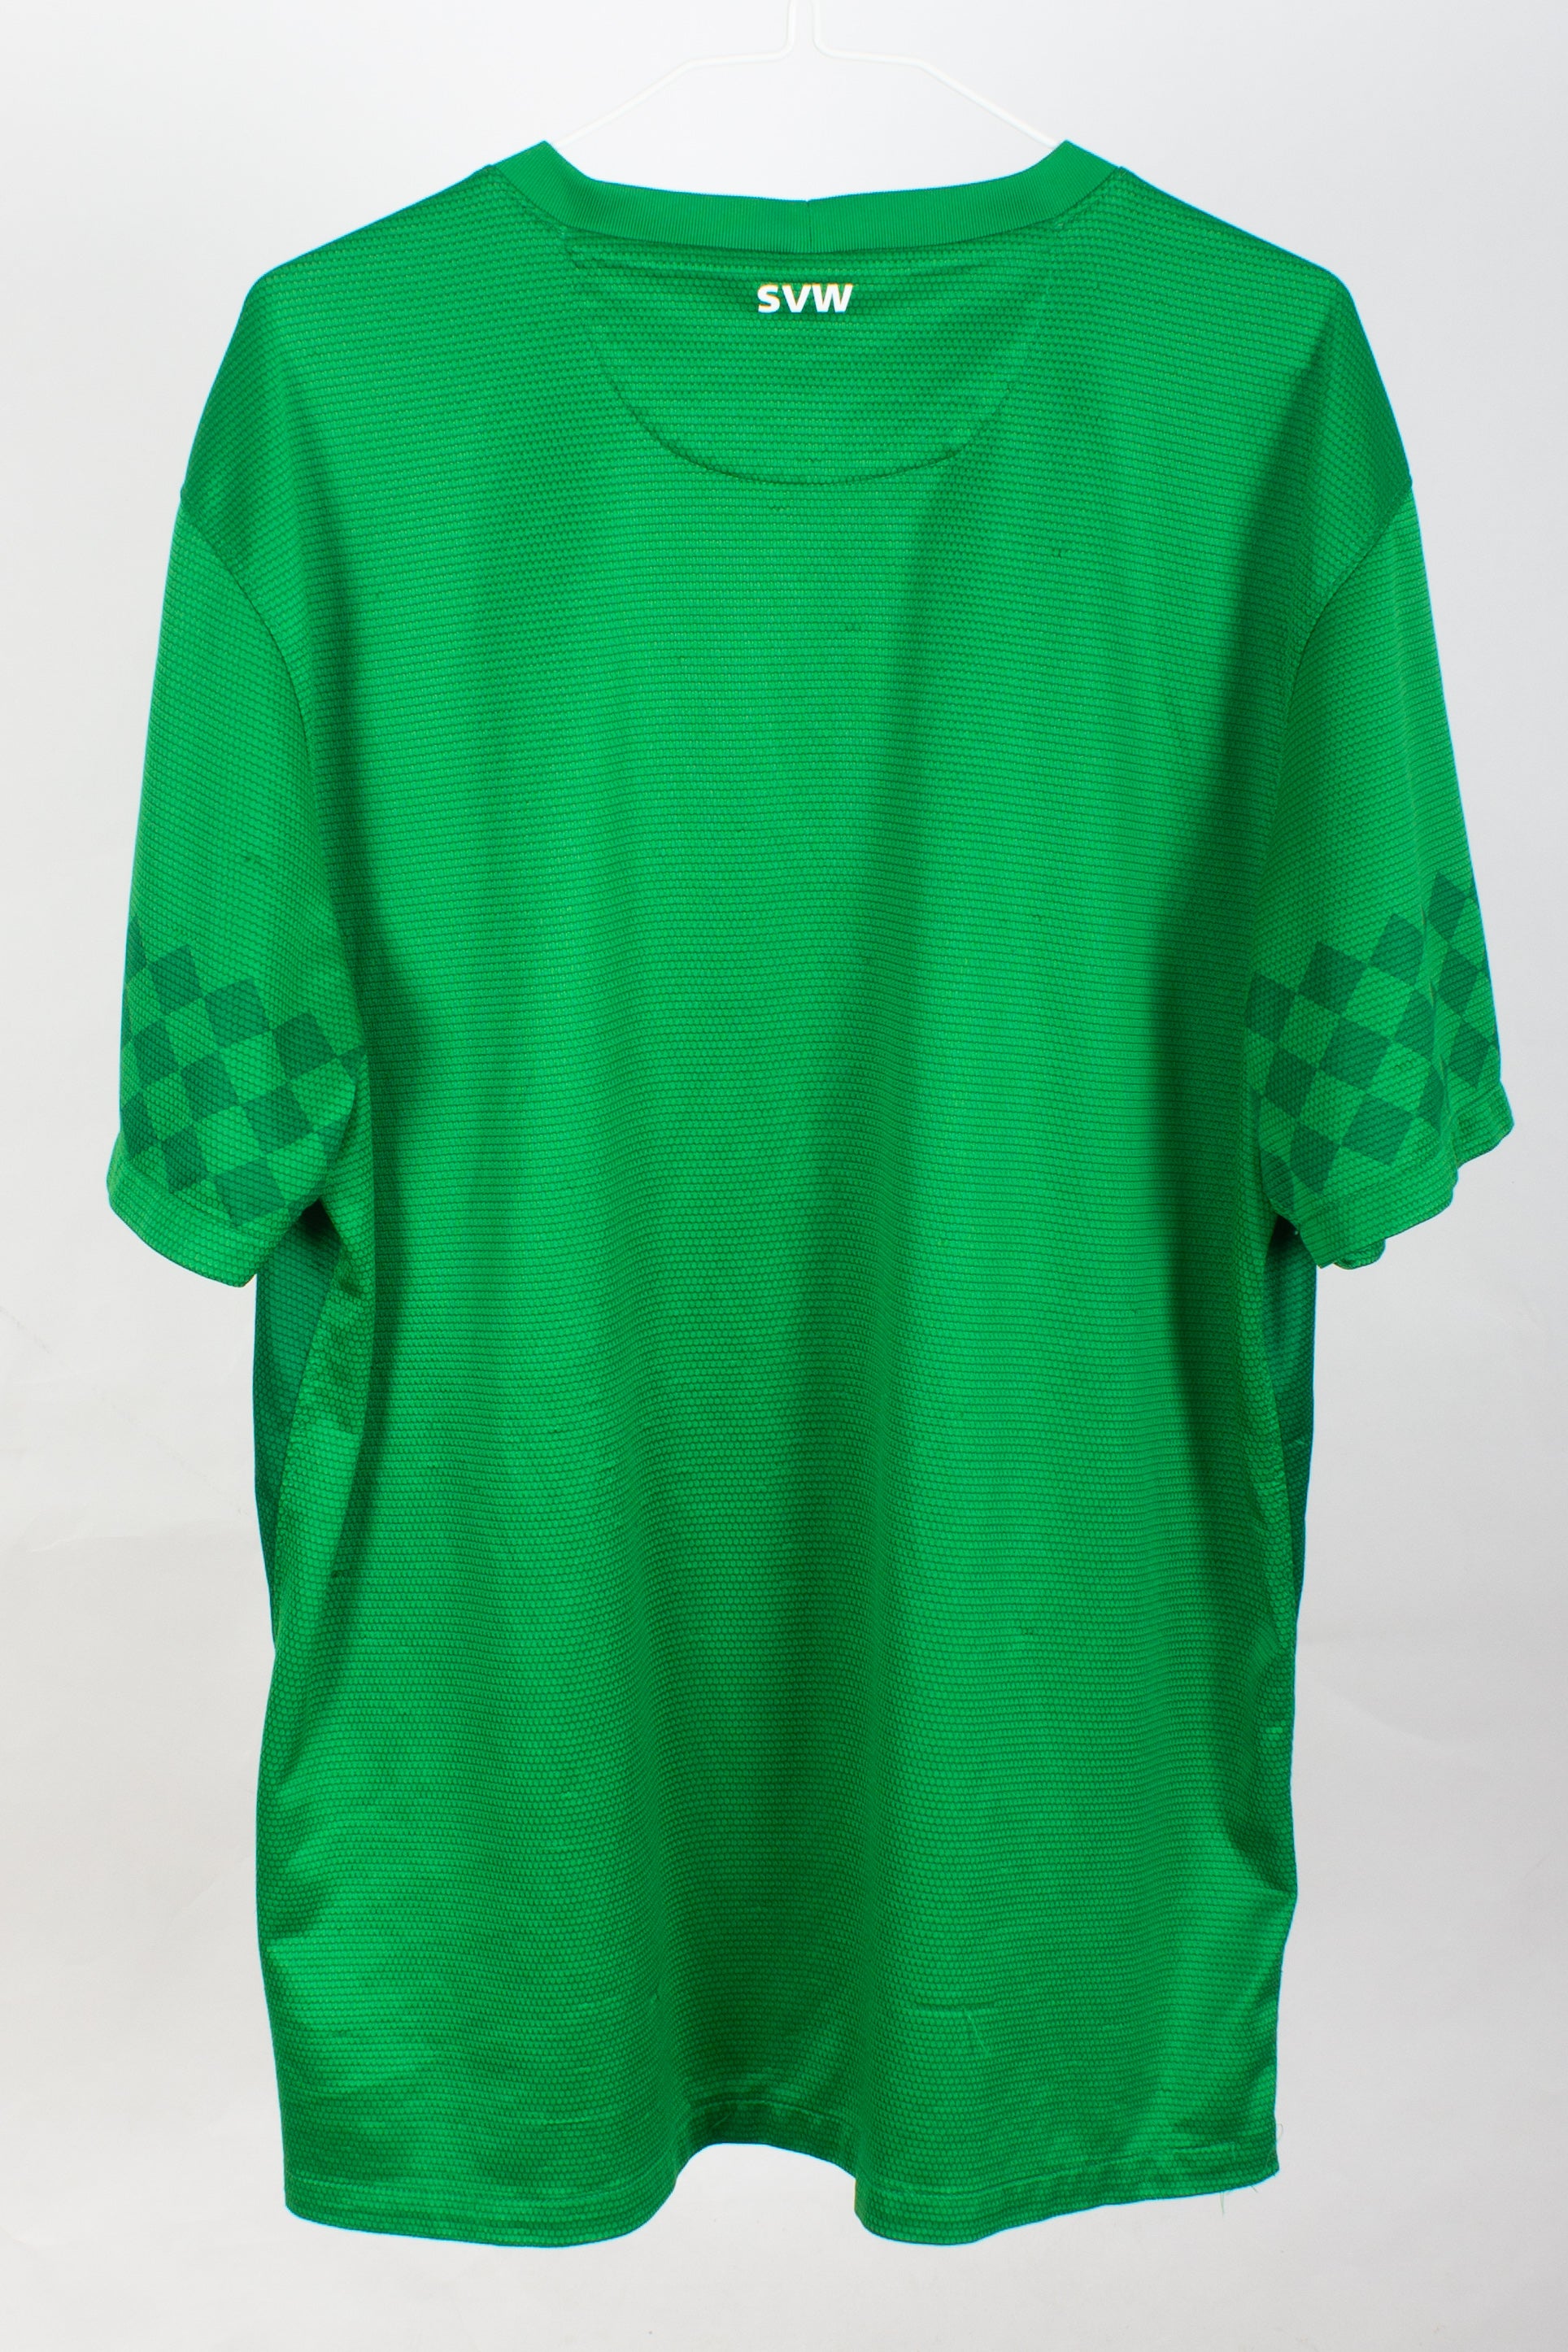 Werder Bremen 2012/13 Home Shirt (L)